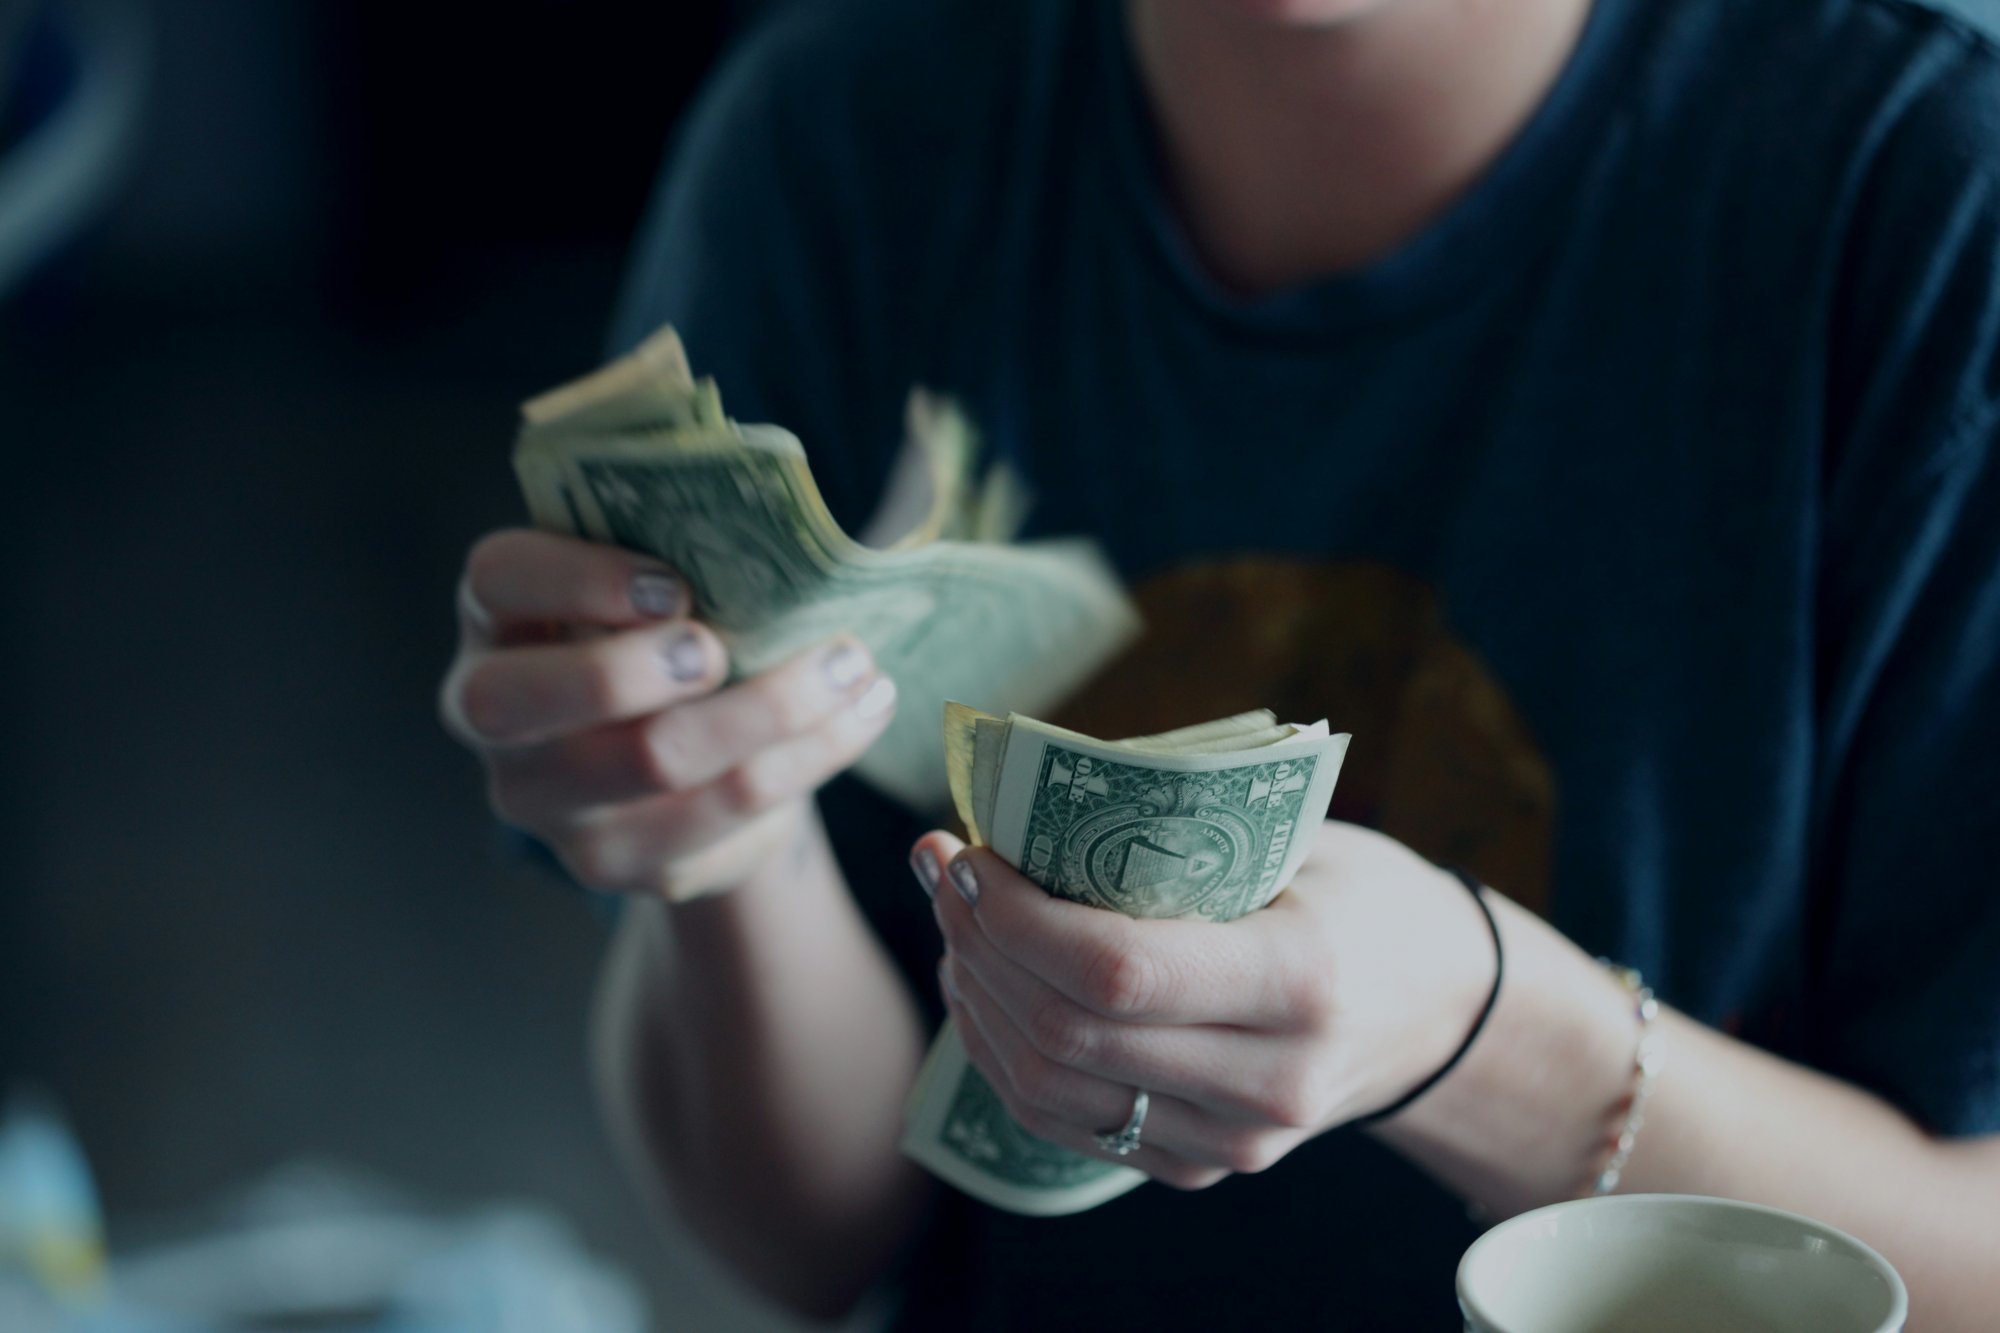 Οικονομικές συμβουλές μέσω TikTok προτιμούν οι νέοι – Η νέα γλώσσα του χρήματος